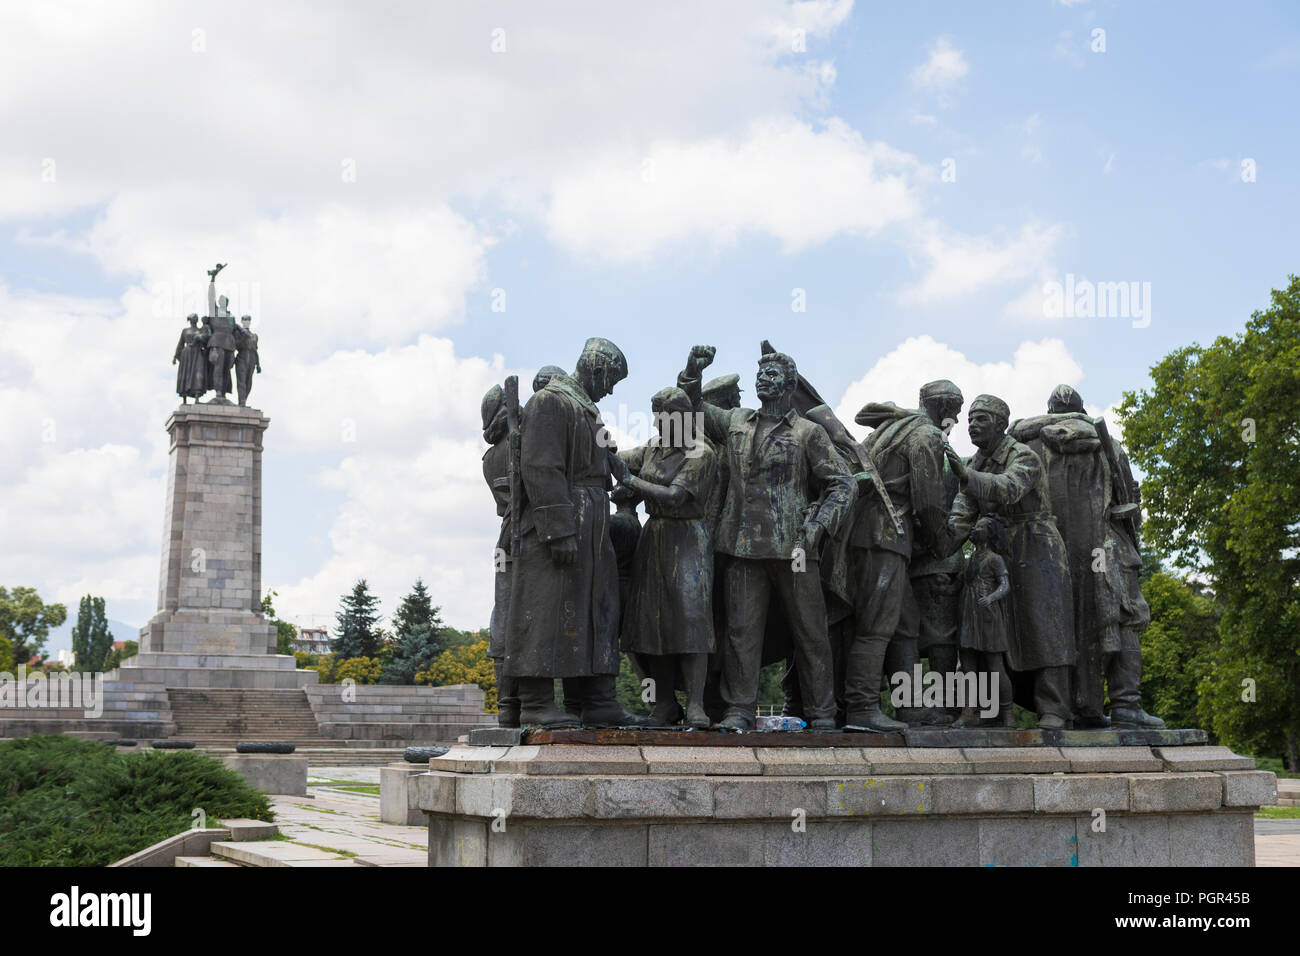 Denkmal in Sofia, das die Befreiung Bulgariens durch die russische Sowjetarmee im Jahr 1944 darstellt Stockfoto